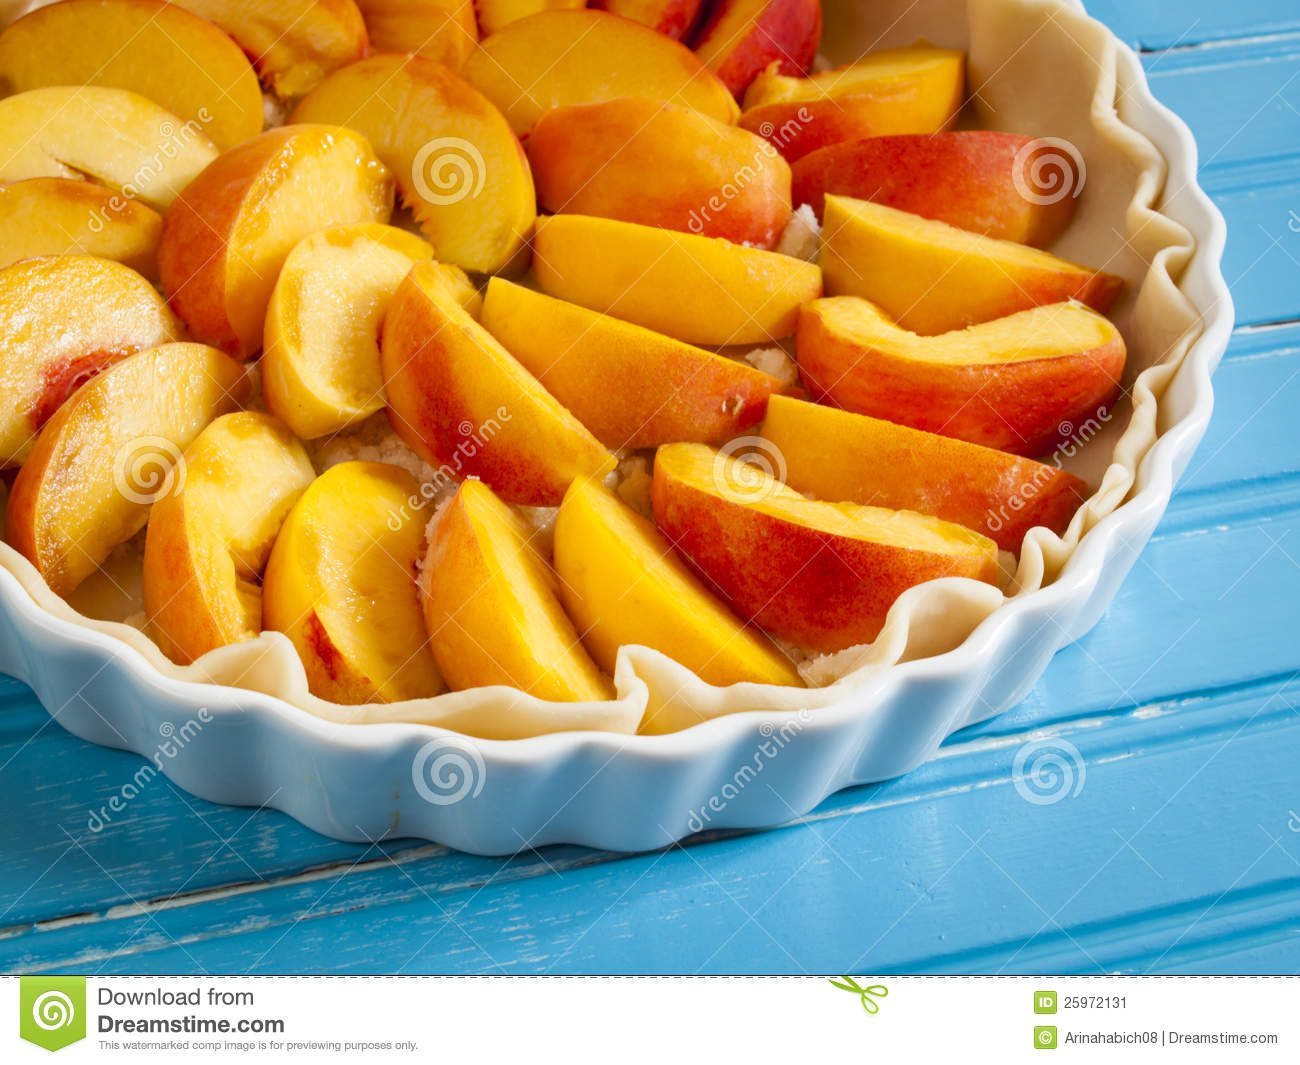 Peach Pie Stock Image   Image  25972131